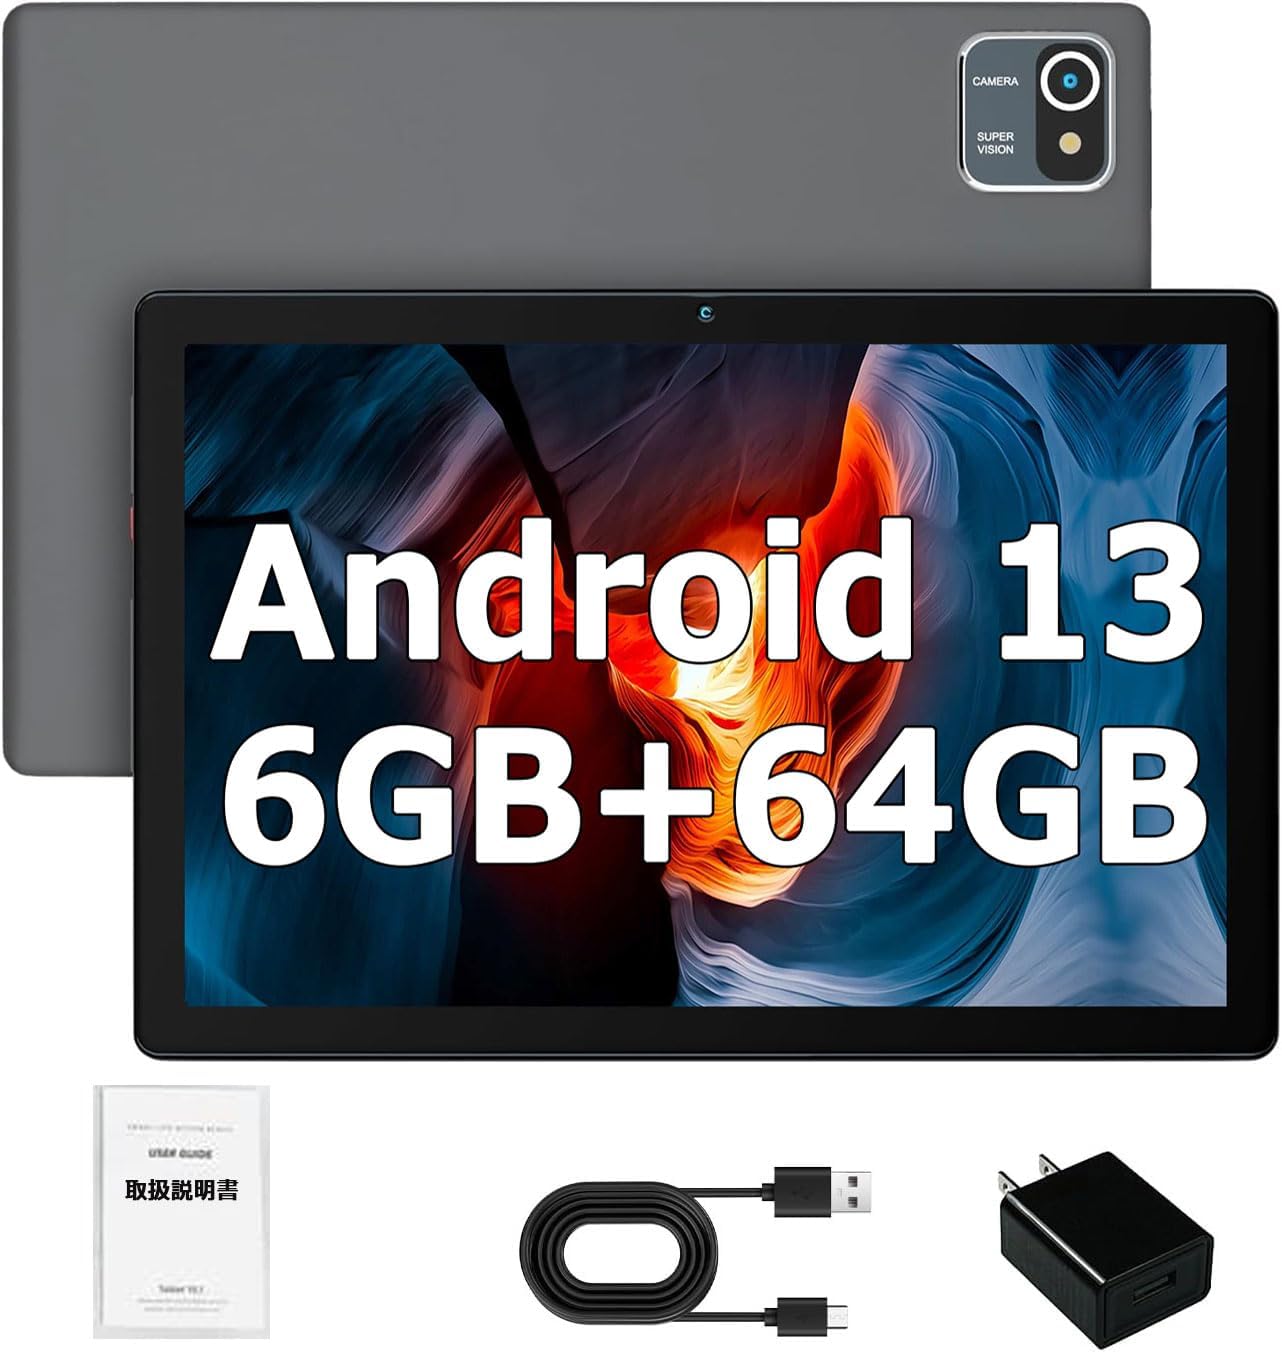  планшет 10 дюймовый wi-fi модель 6GB +64GB+1TB TF повышение,WiFi+1280*800 IPS 5MP/8MP+Type-C зарядка +Bluetooth+5000mAh+ двойной камера 